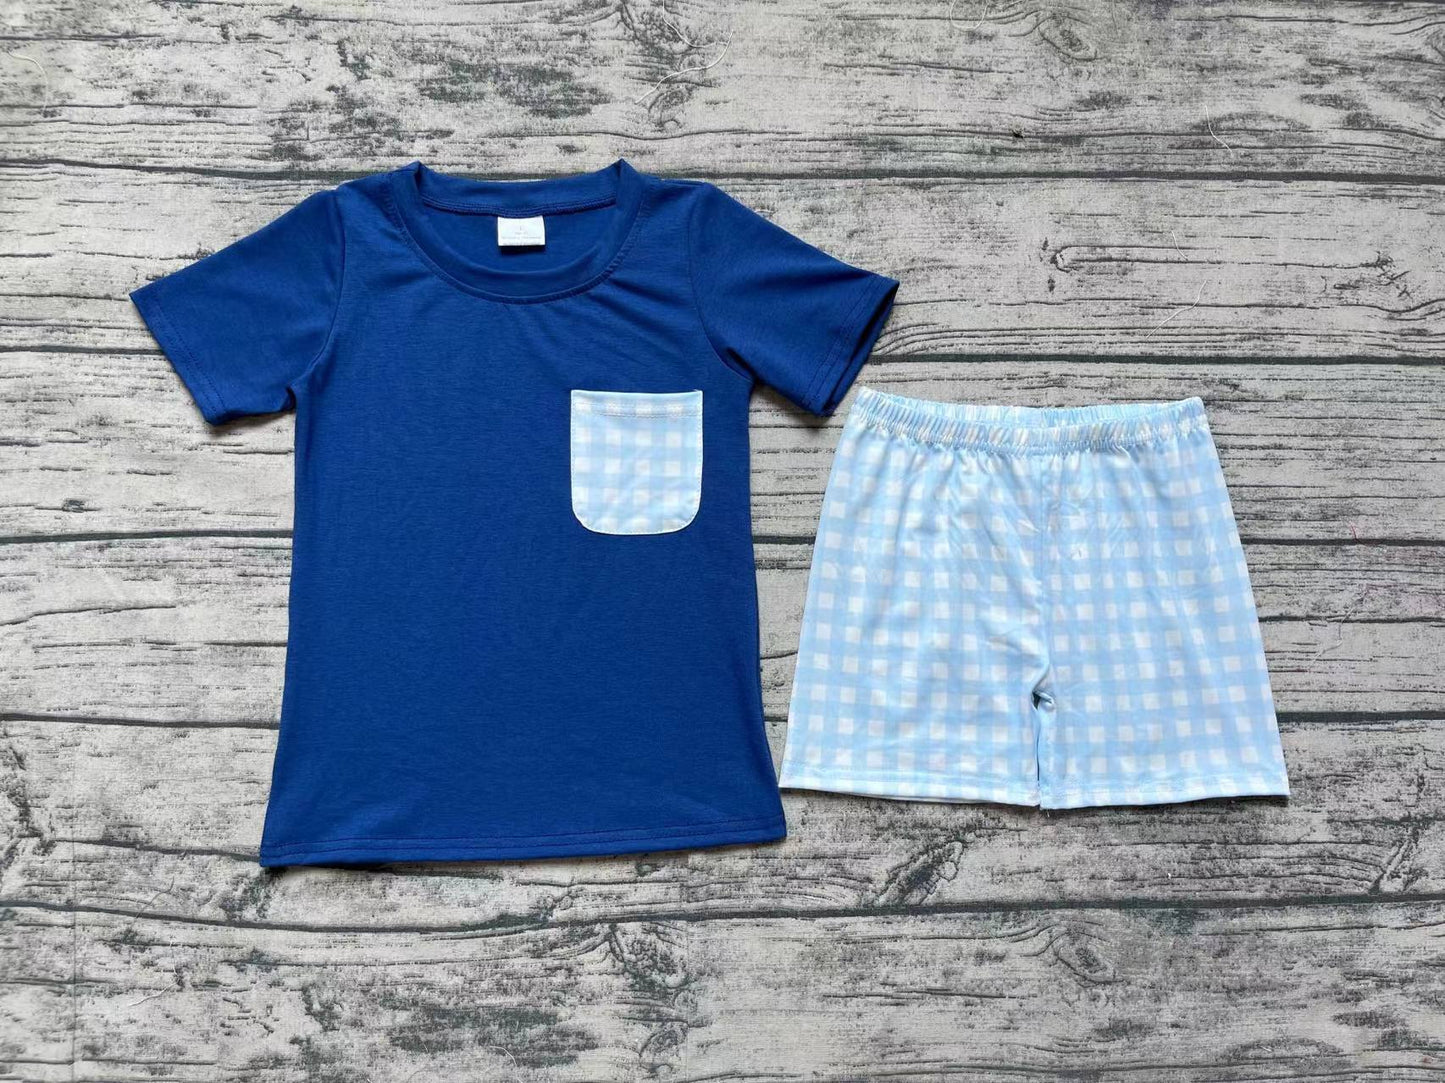 Baby Boys Navy Pocket Shirt Top Checkered Shorts Clothes Sets Preorder